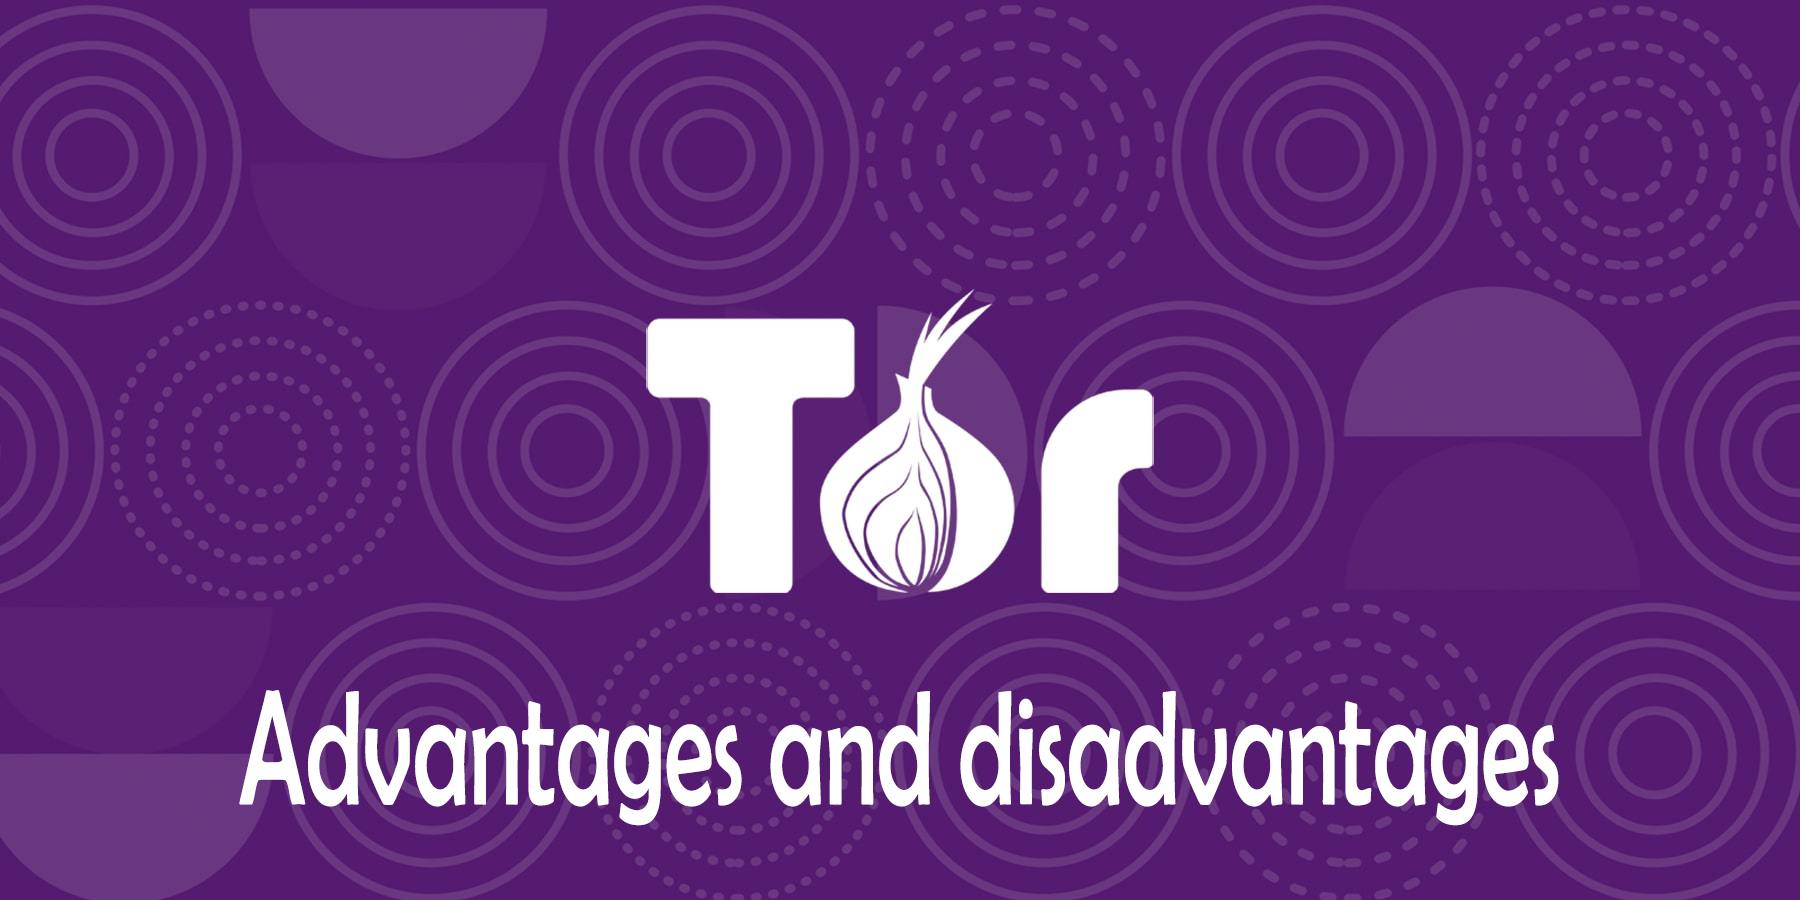 Tor browser плюсы и минусы mega2web тор браузер скачать бесплатно на русском для андроид mega